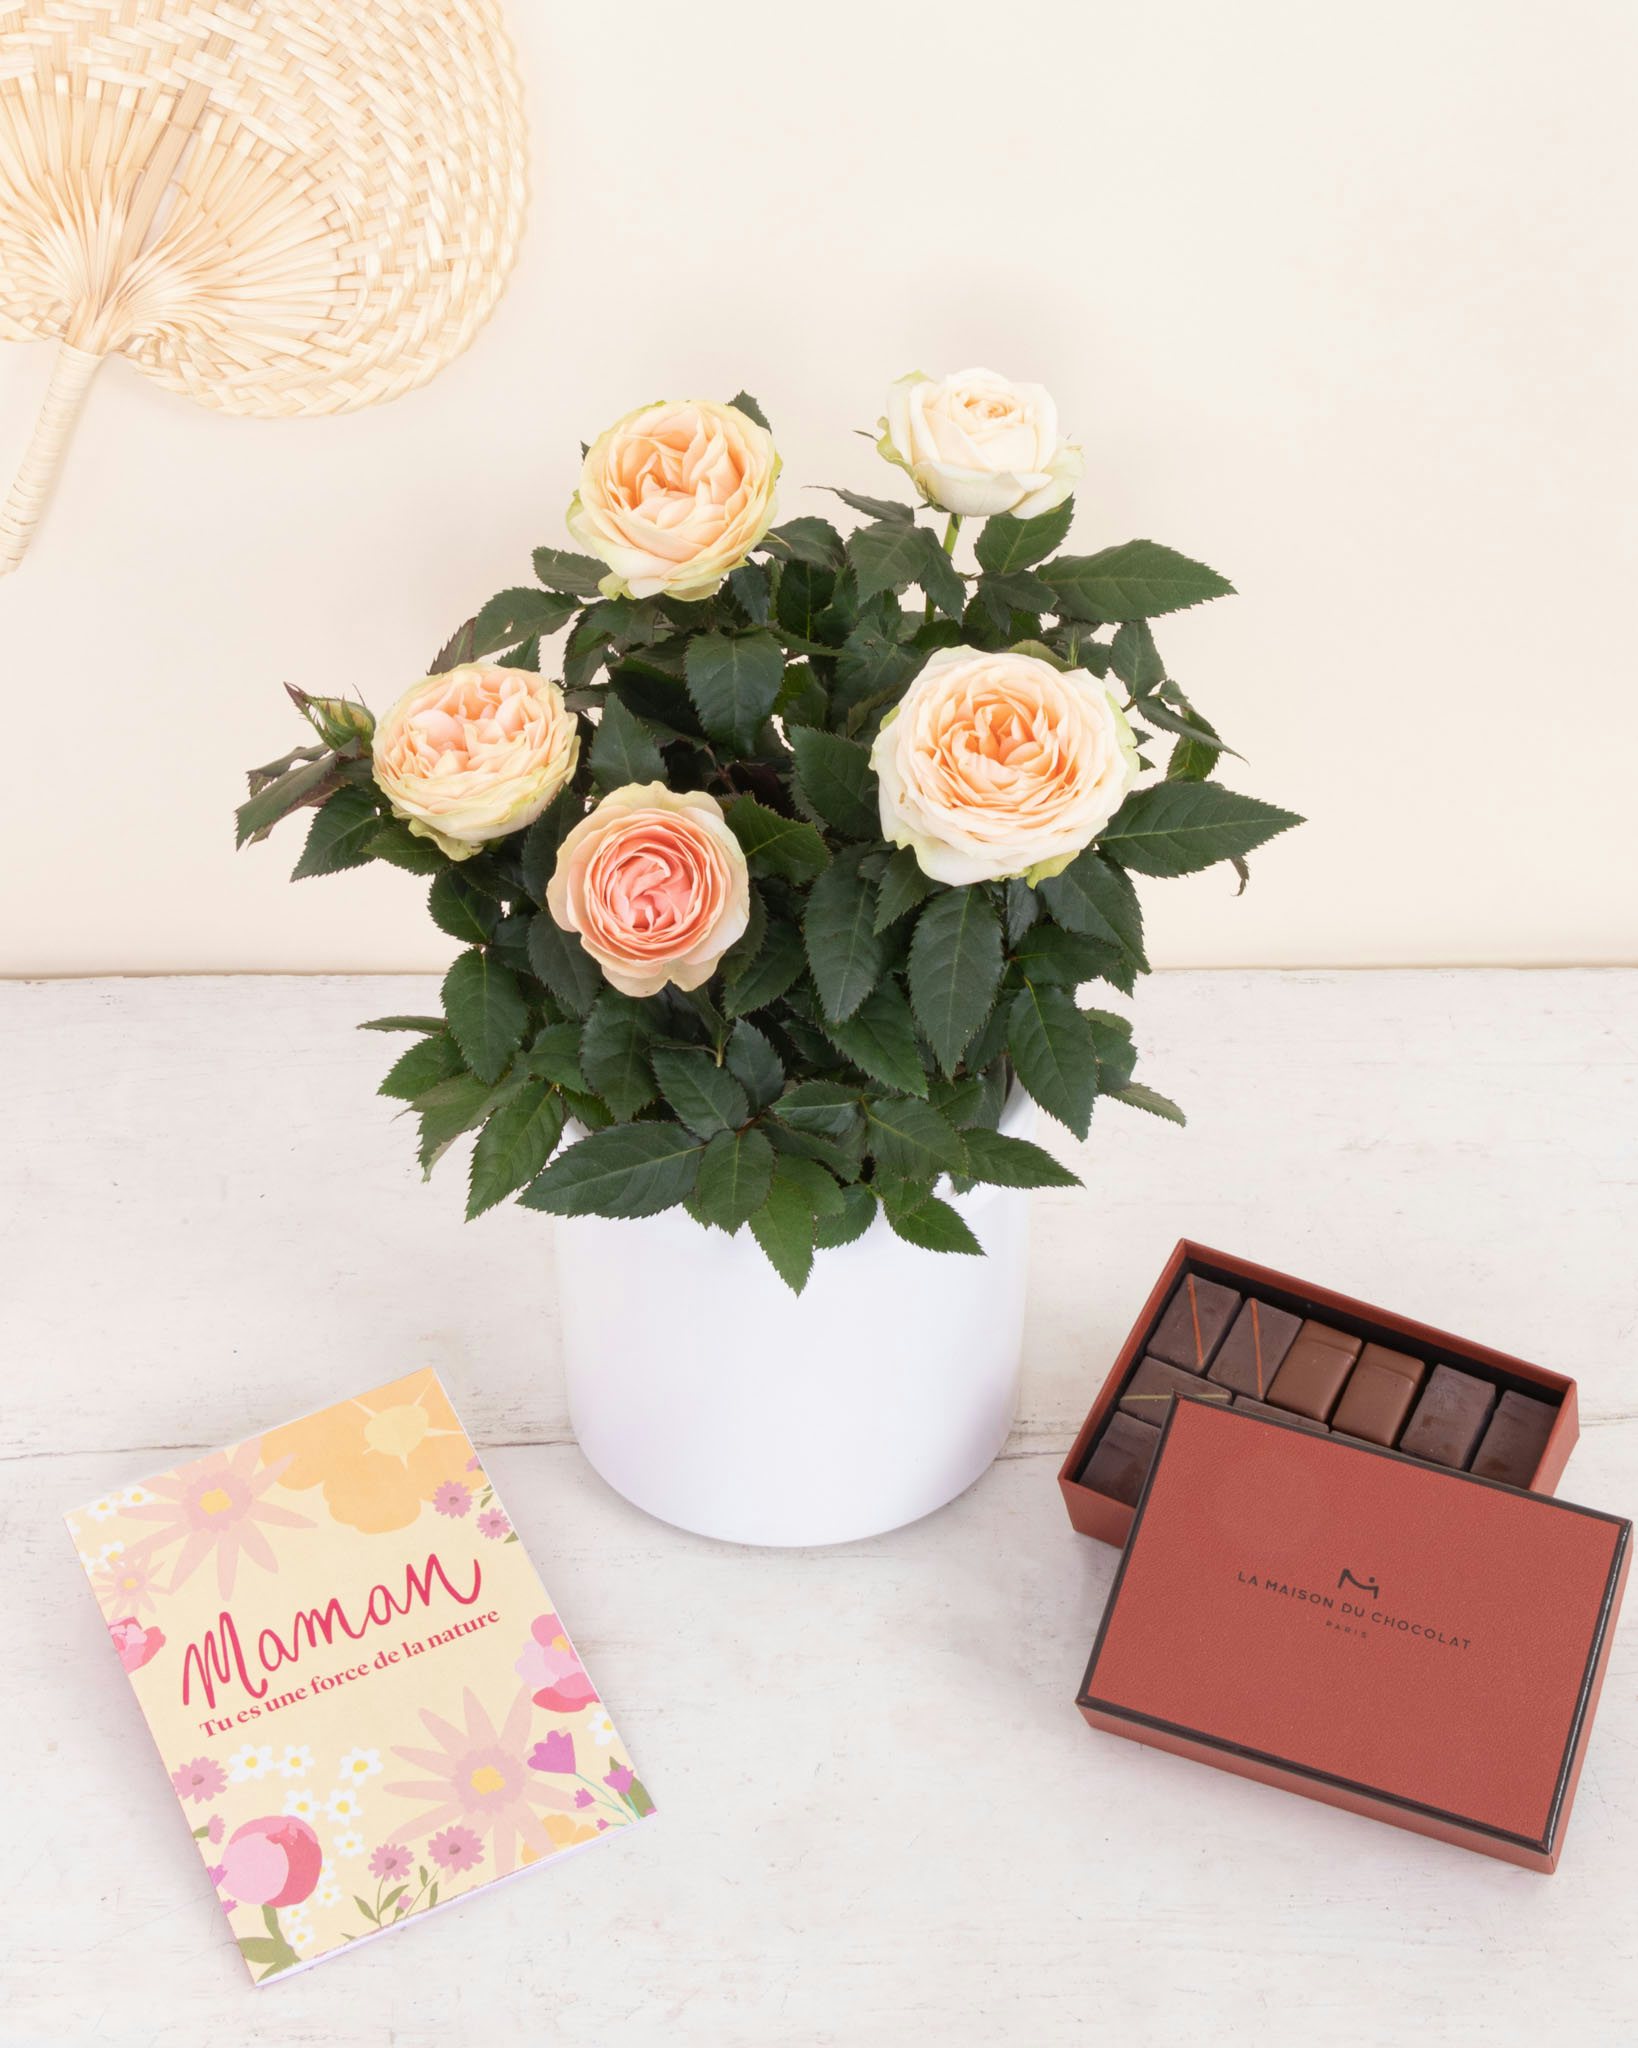 L'Offre chocolatée Jeanne contient : un rosier rose pâle, un cache-pot en céramique, un coffret La Maison du Chocolat et une carte illustrée